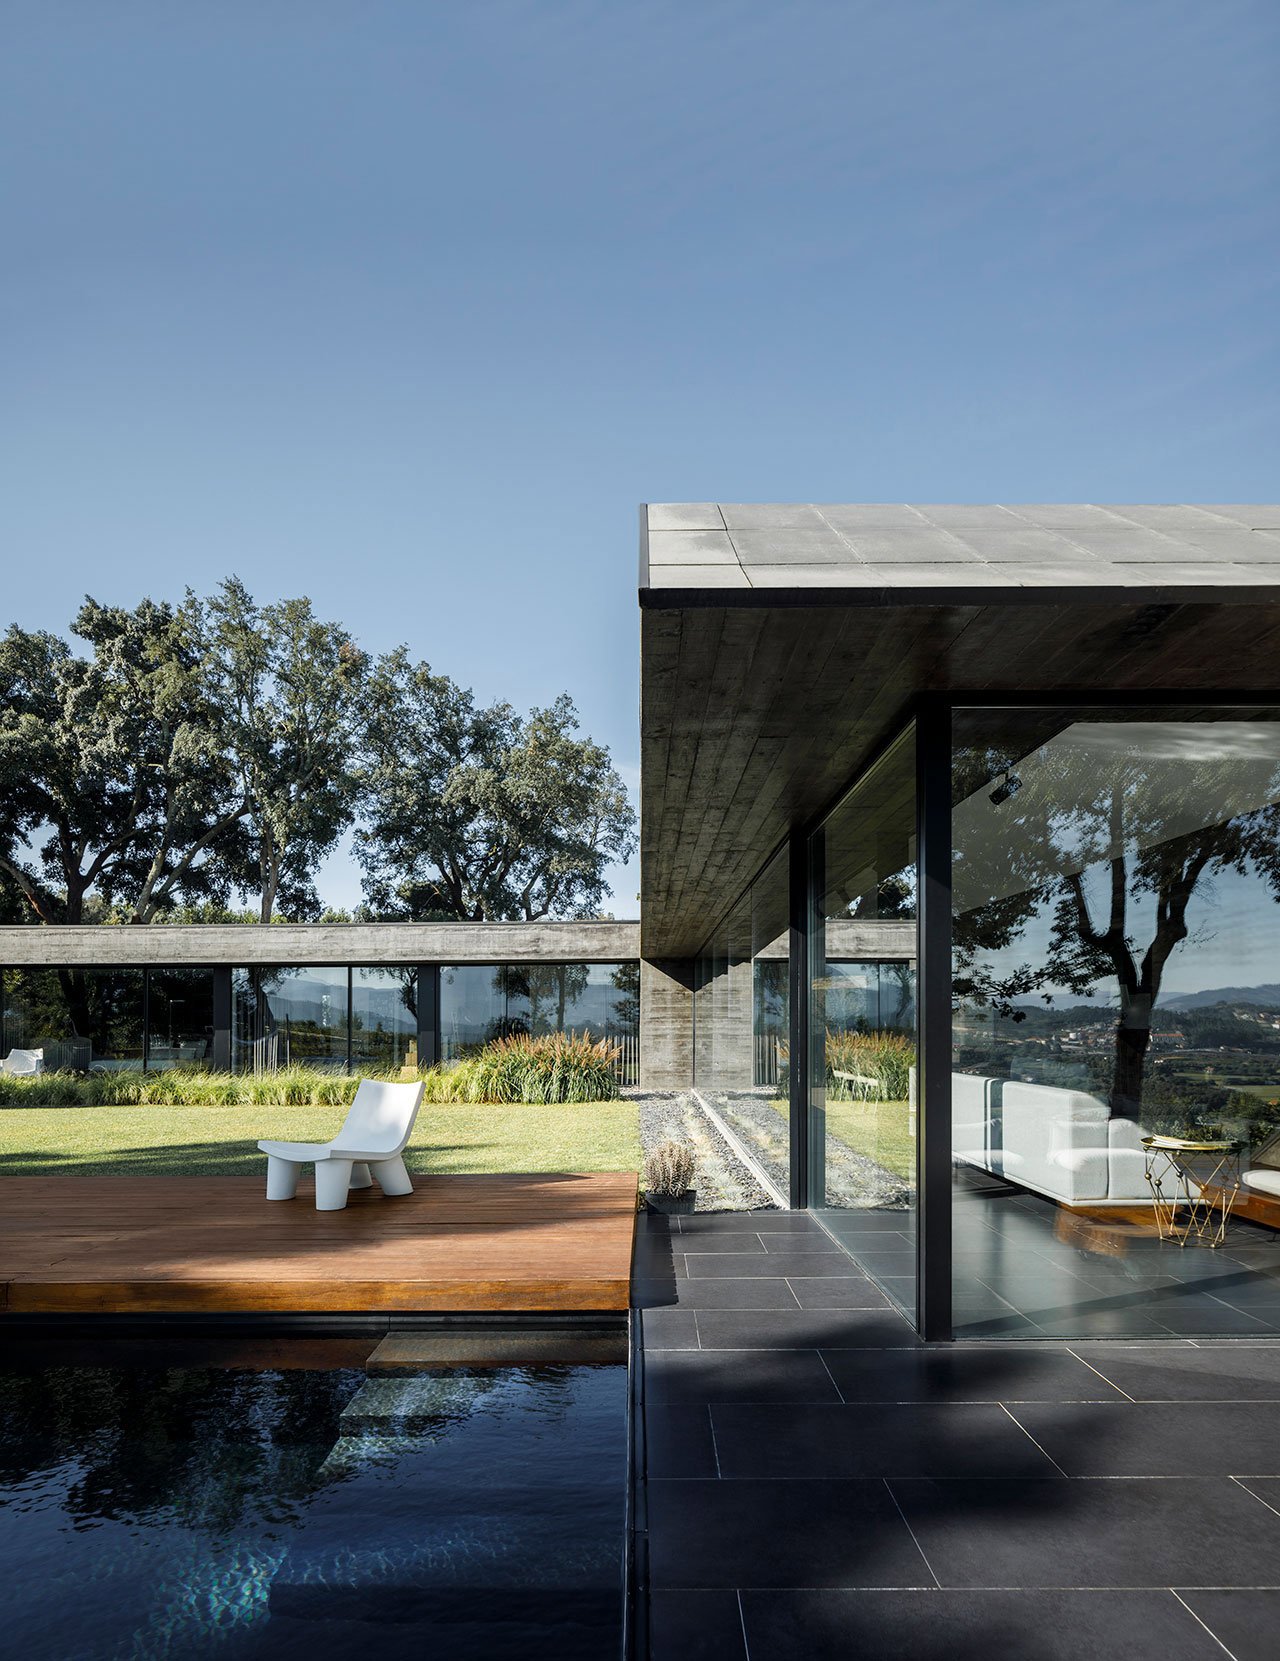 Casa moderna de hormigon en el camp ode Portugal piscina con la fachada